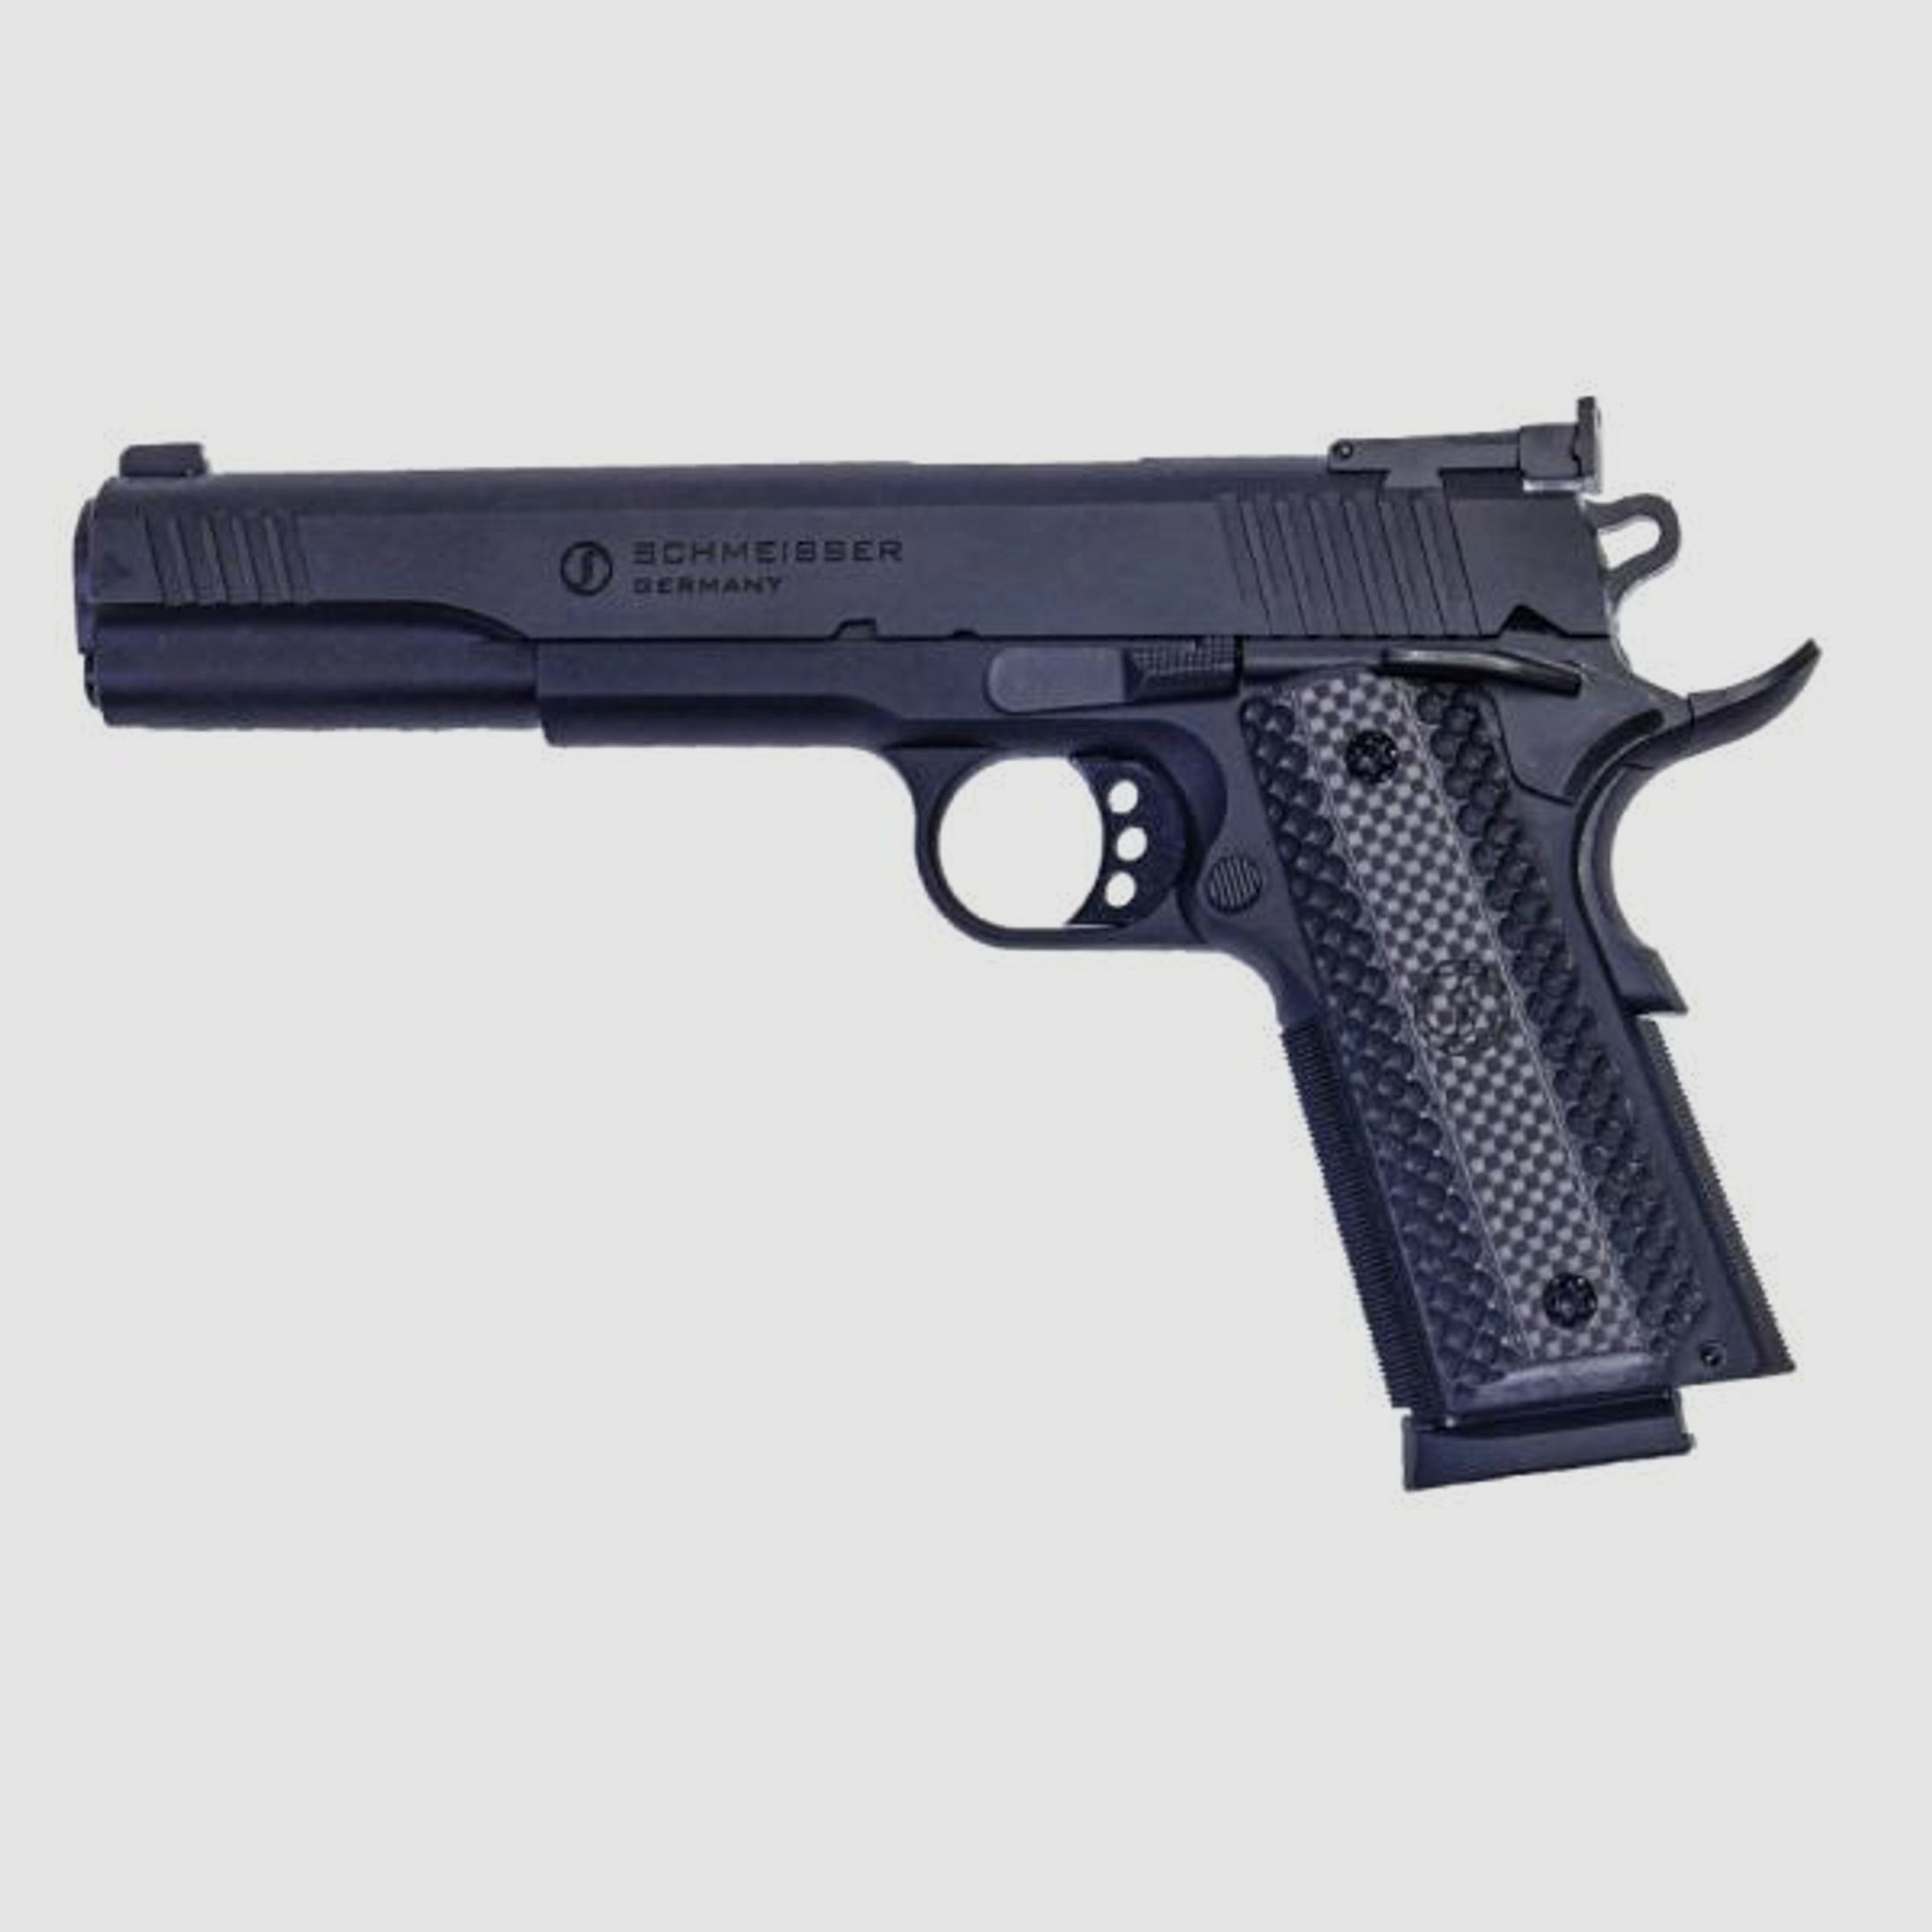 SCHMEISSER Pistole Mod. 1911 -6' HUGO 9mmLuger